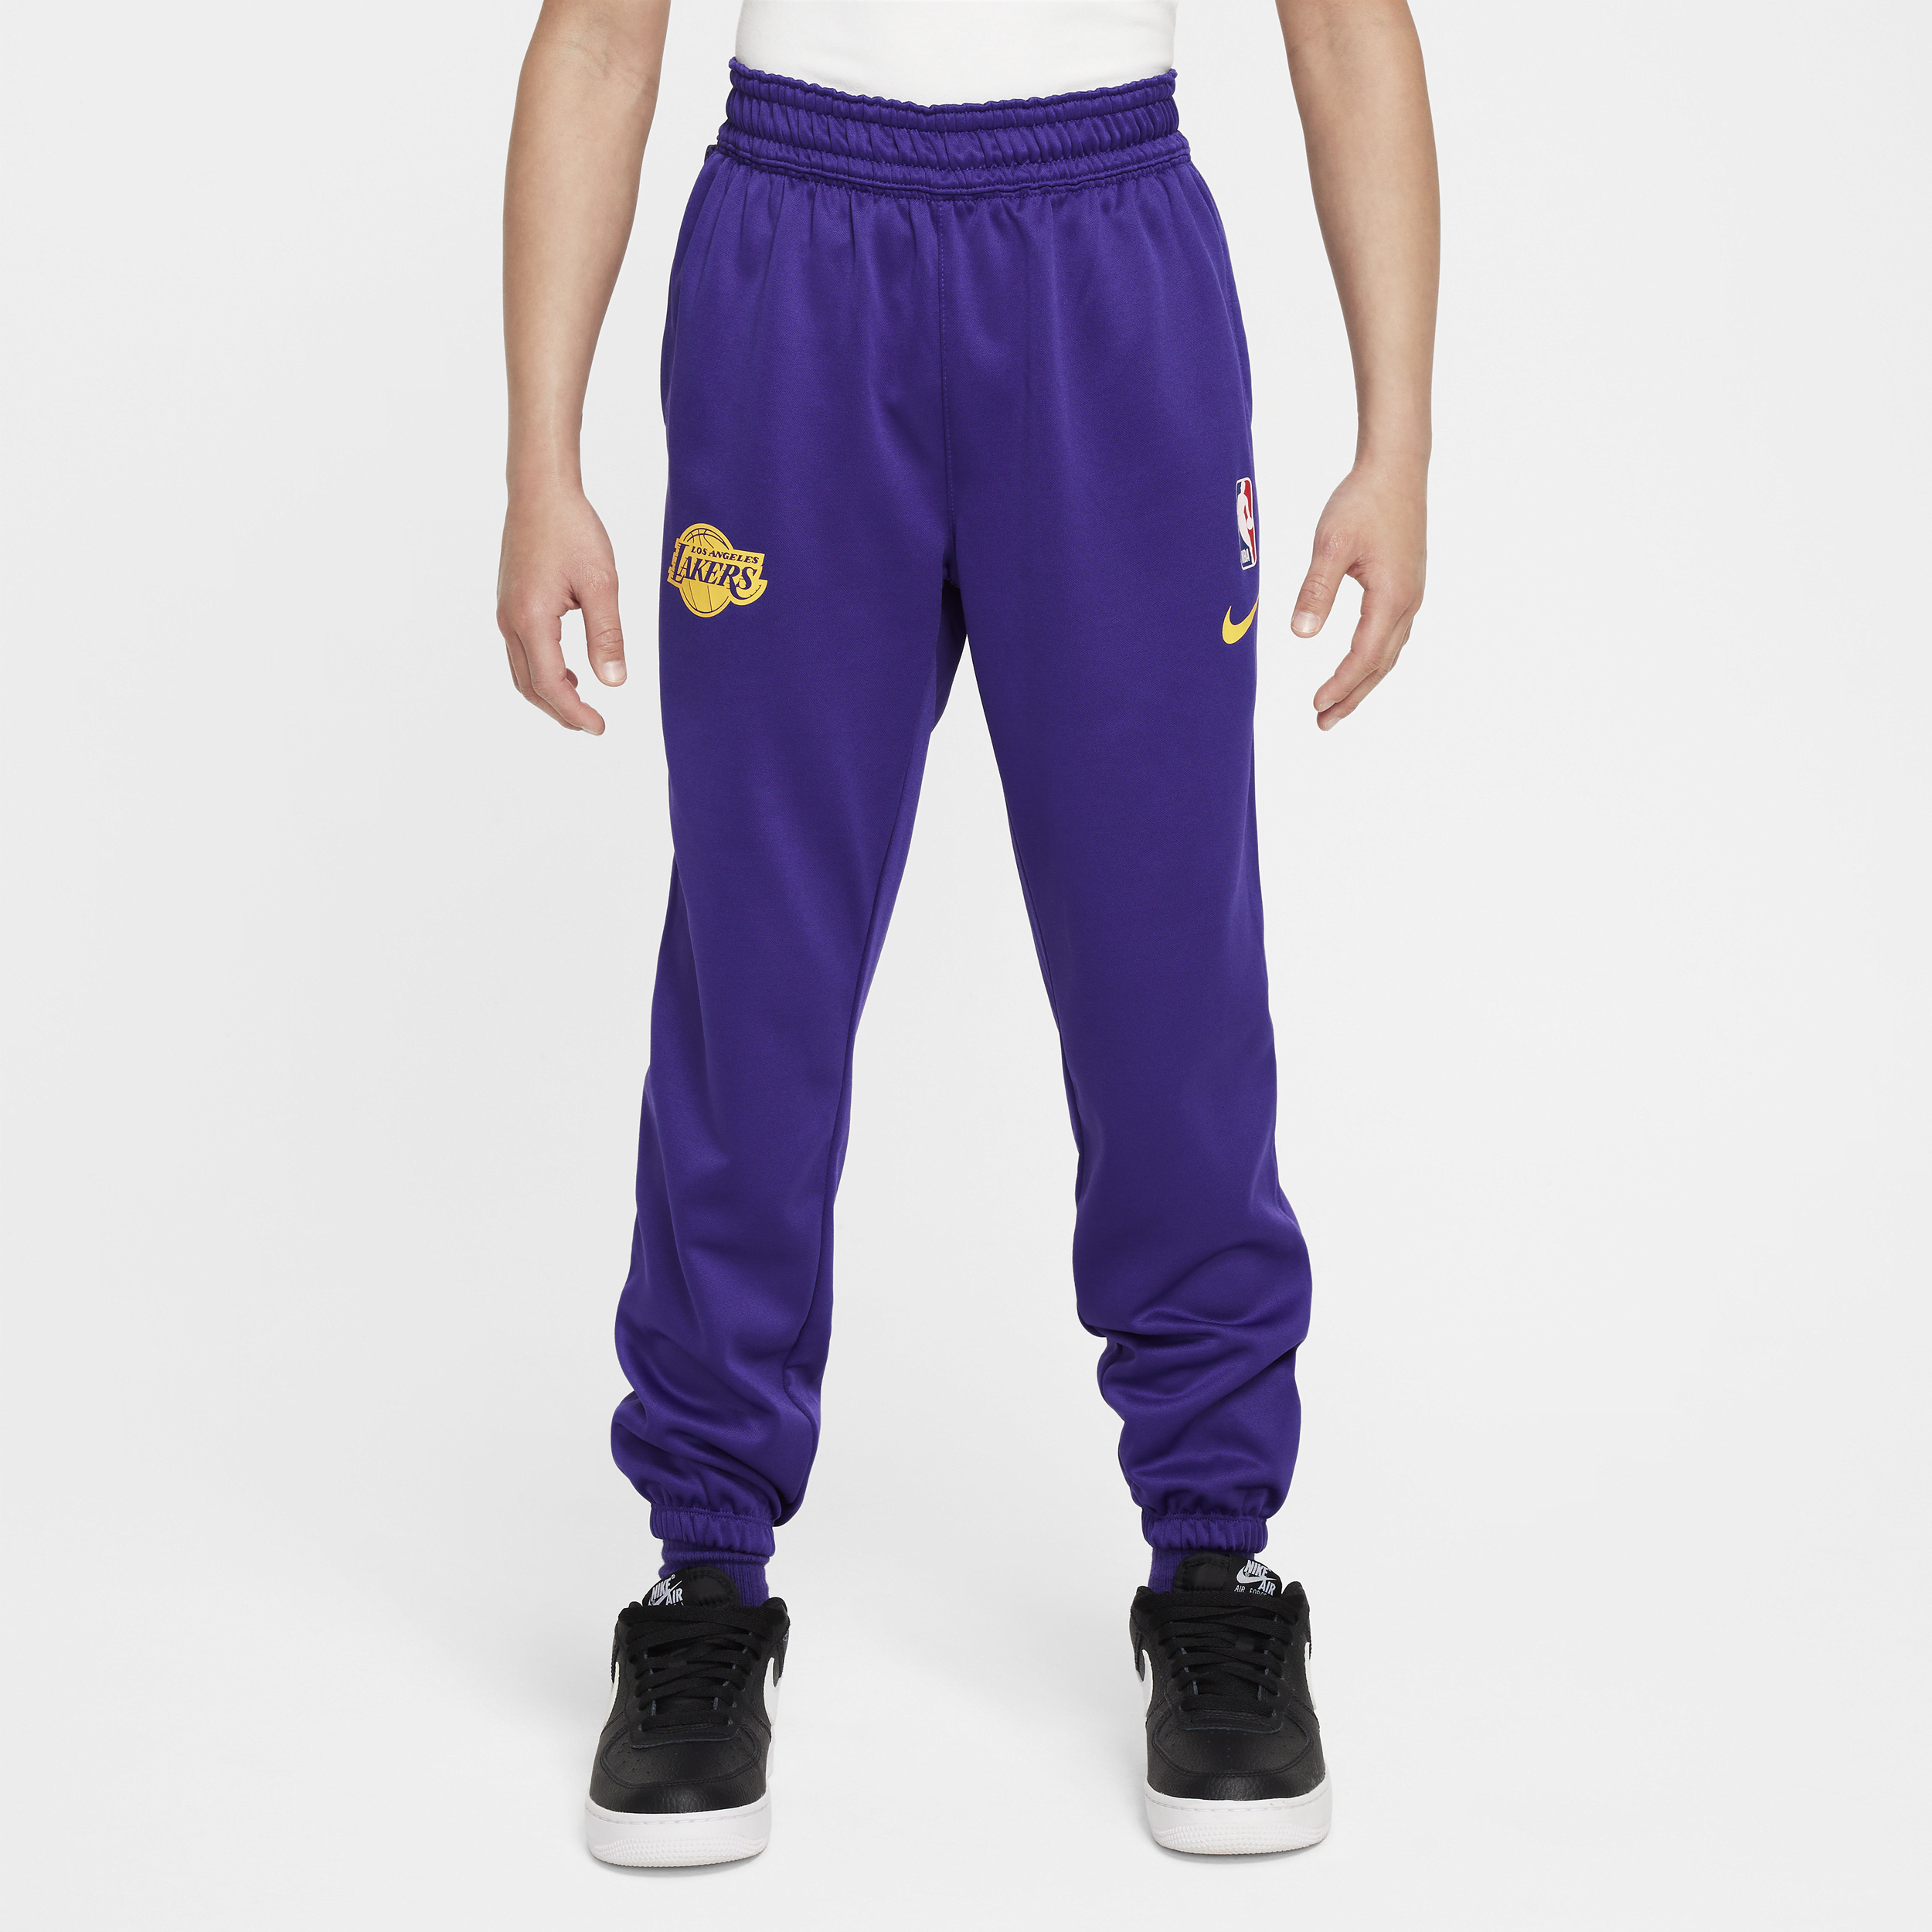 Los Angeles Lakers Spotlight Pantalón Nike Dri-FIT de la NBA - Niño/a - Morado